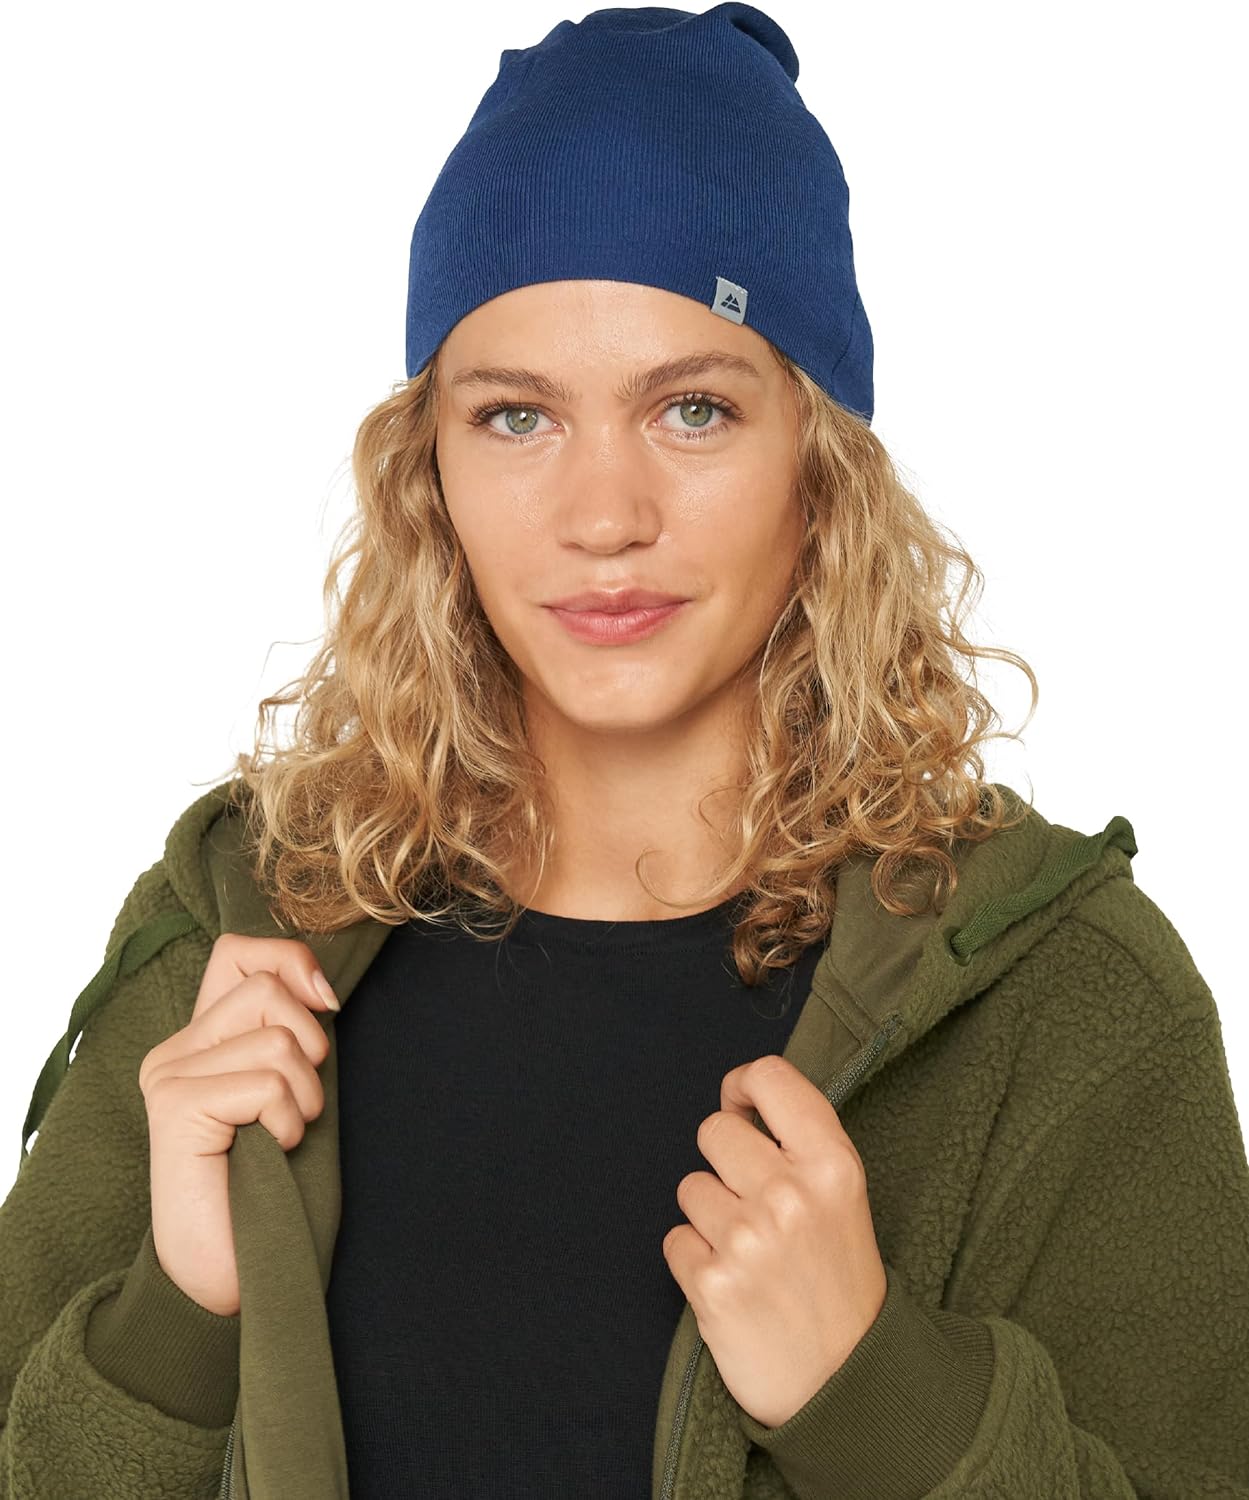 & ENDURANCE DANISH eBay Thermal Women, Merino Lightweight | Men Beanie Hat for Wool